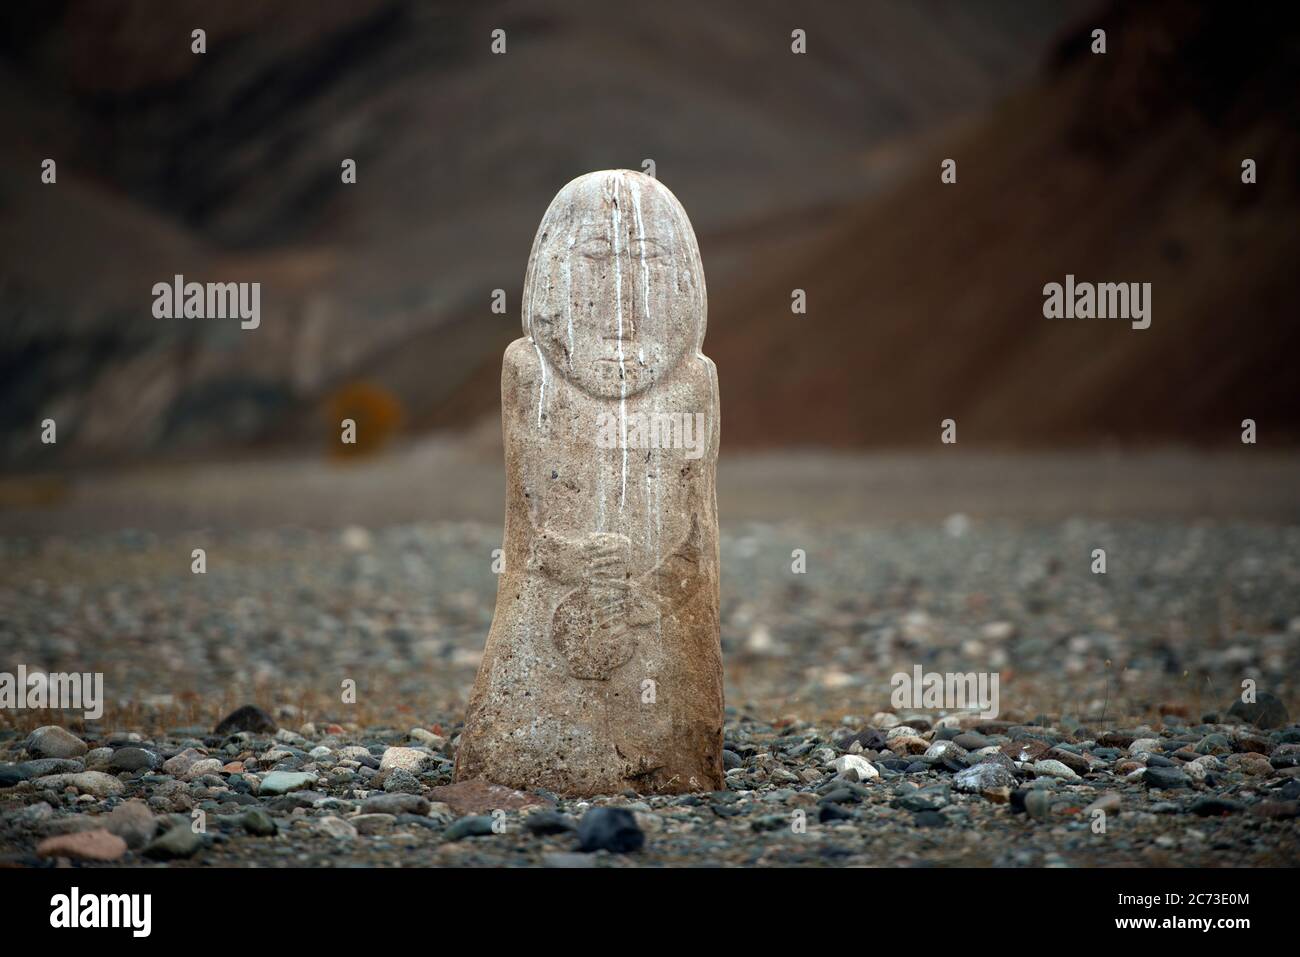 Una pietra in piedi registra la presenza di antiche società umane preistoriche nella provincia di Bayan-Ölgii, Mongolia occidentale. Foto Stock